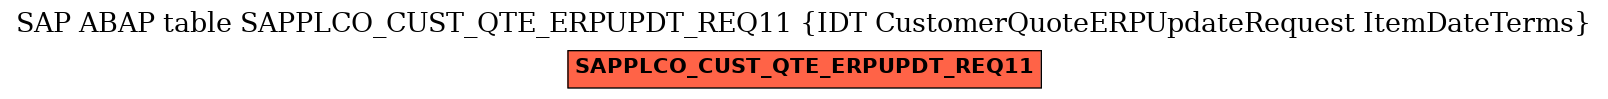 E-R Diagram for table SAPPLCO_CUST_QTE_ERPUPDT_REQ11 (IDT CustomerQuoteERPUpdateRequest ItemDateTerms)